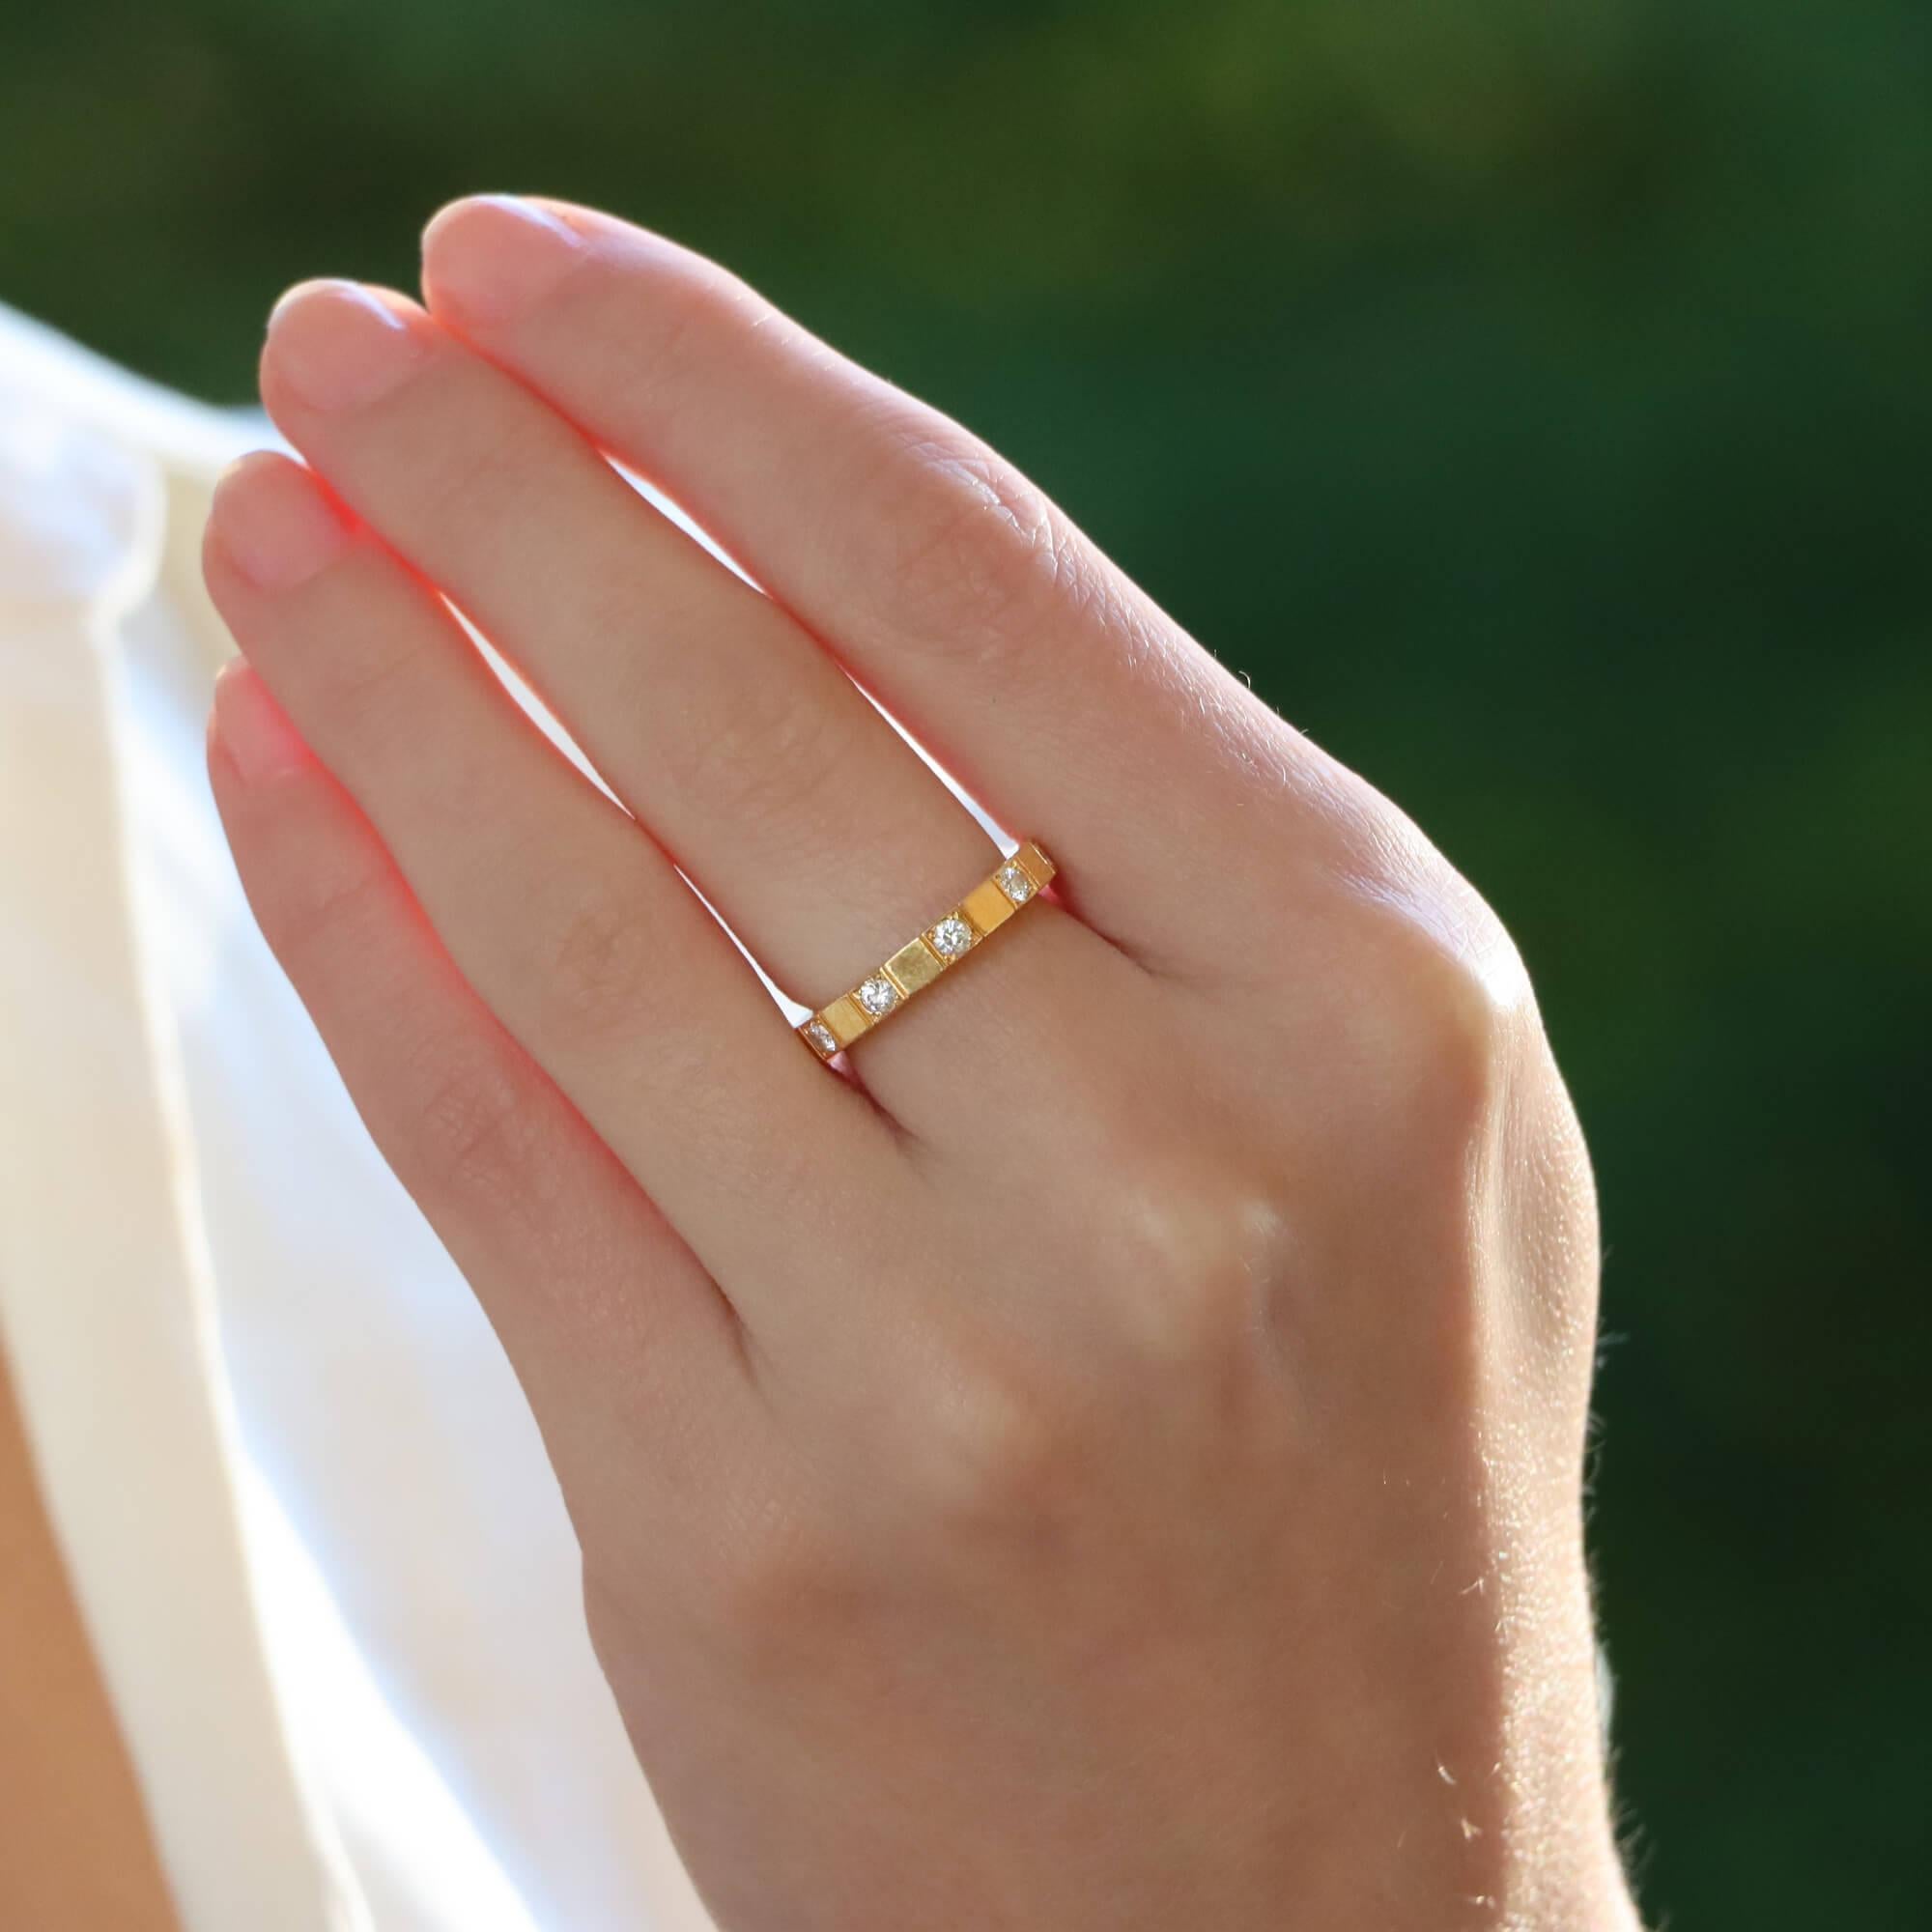 Une belle bague éternelle vintage en diamant Cartier Lanières en or jaune 18k. 

Le bracelet est composé de l'emblématique bracelet Lanières de Cartier, mais il est serti en alternance de diamants ronds taille brillant. Le contraste entre les